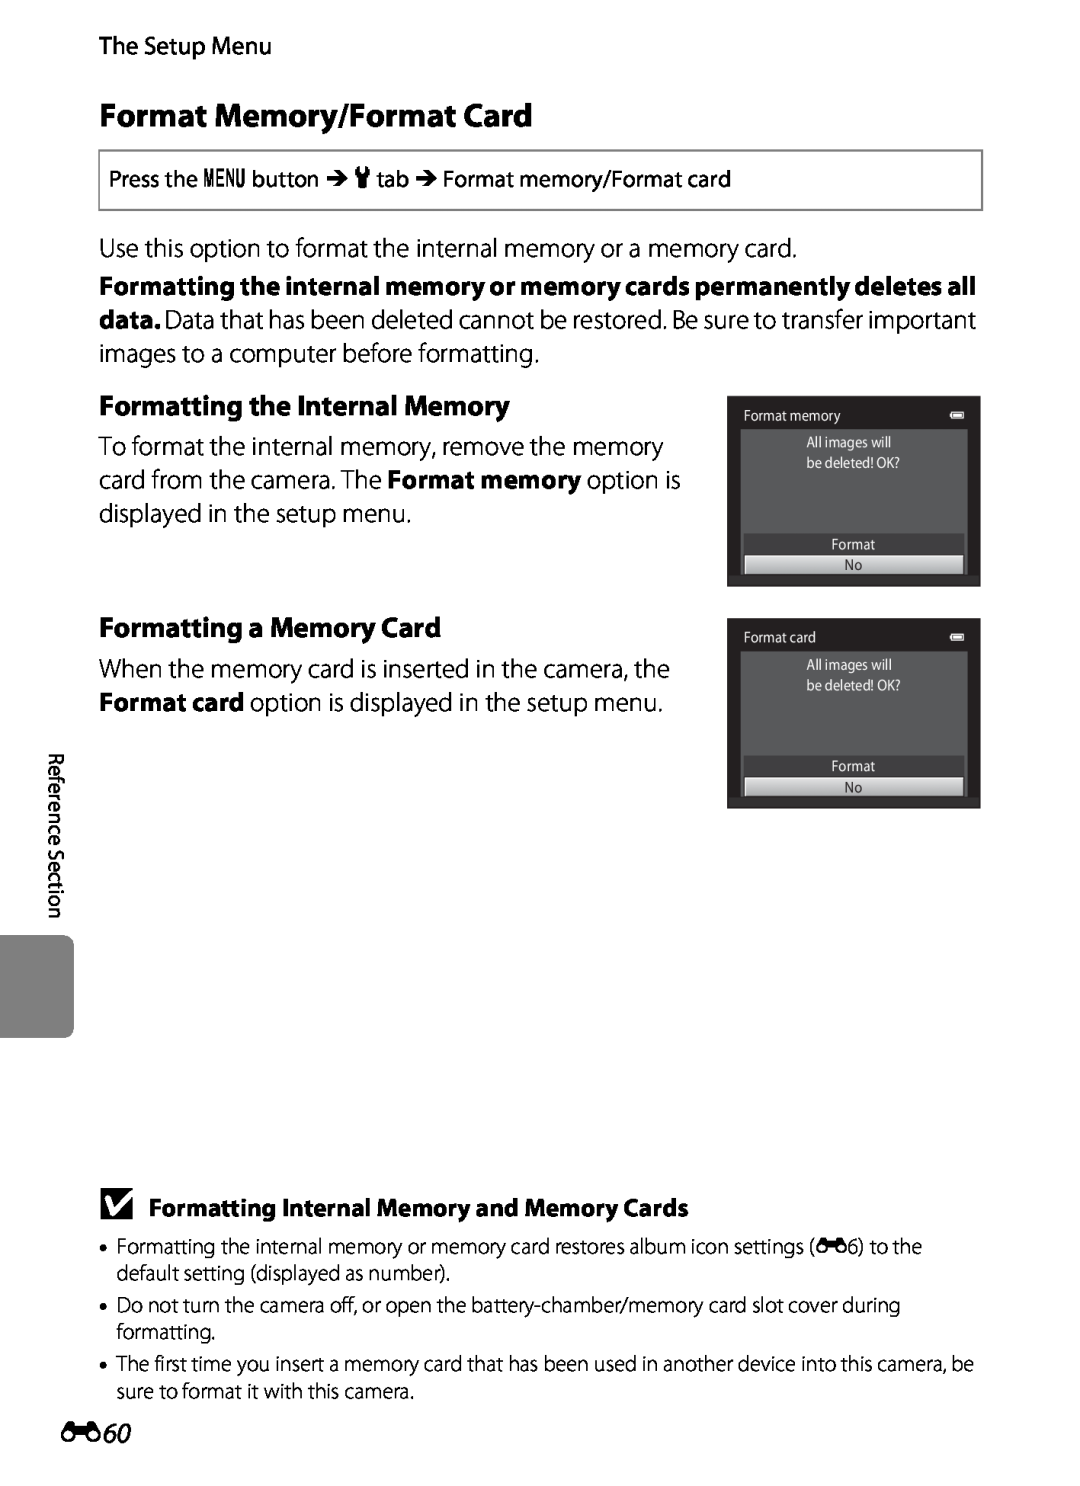 Nikon S2600 manual Format Memory/Format Card, Formatting the Internal Memory, Formatting a Memory Card, The Setup Menu 